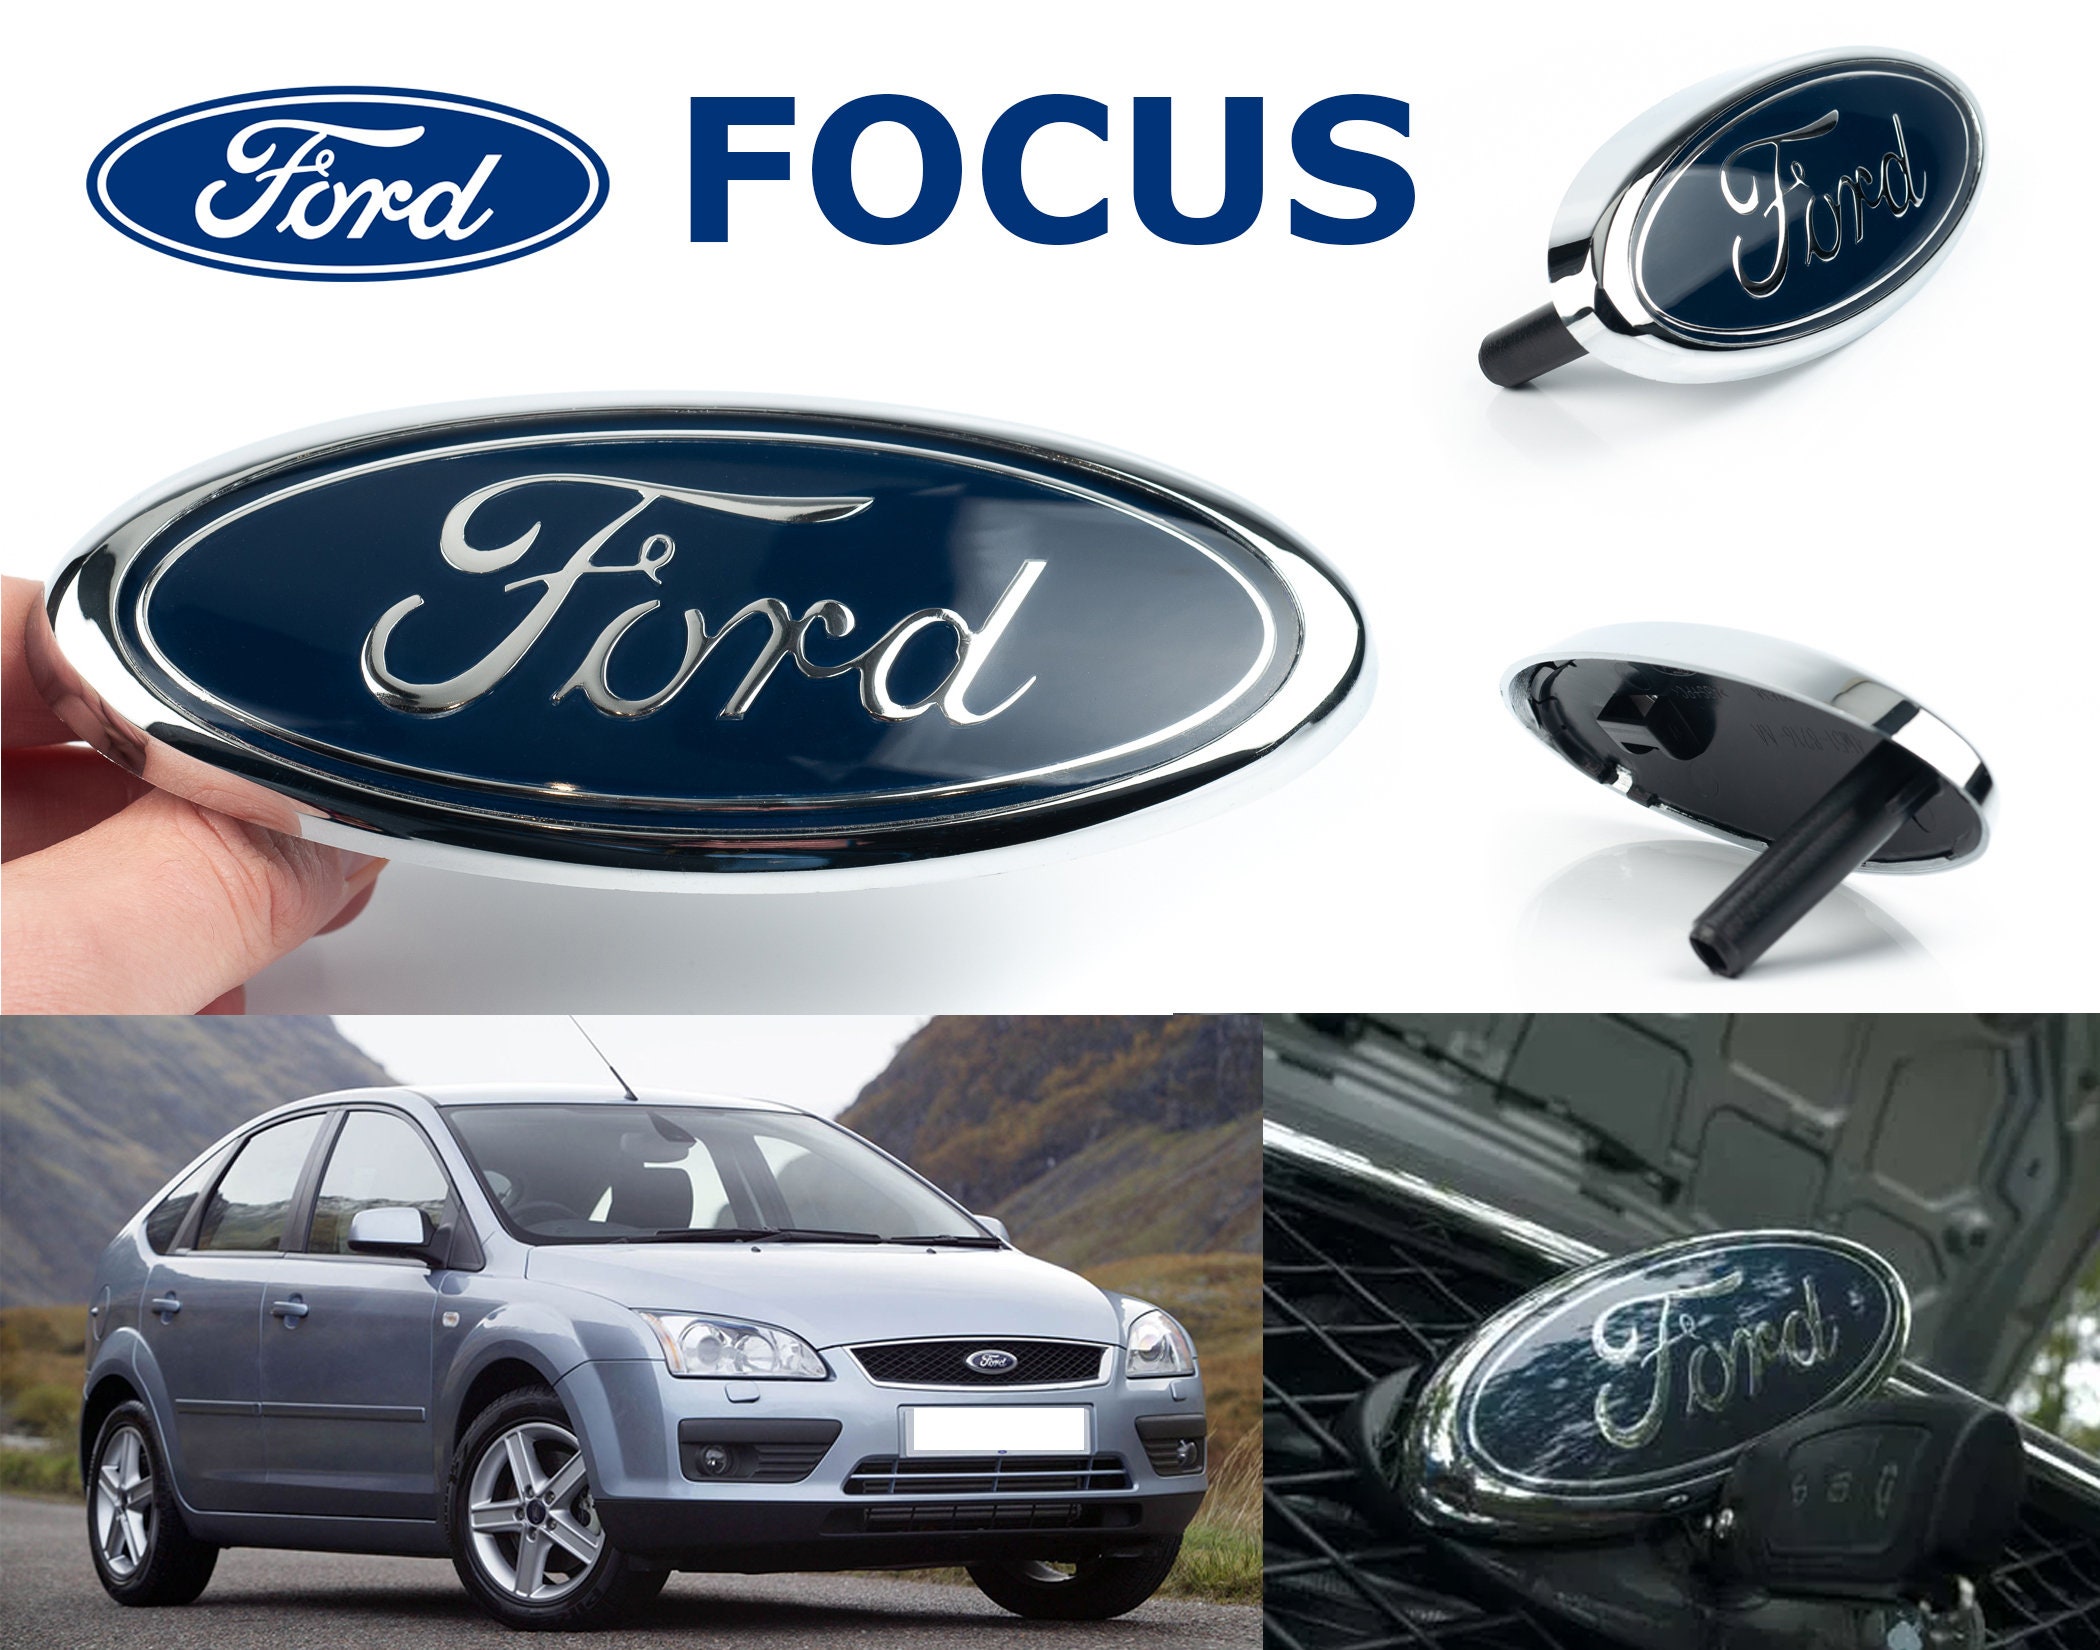 Ford focus interior - .de